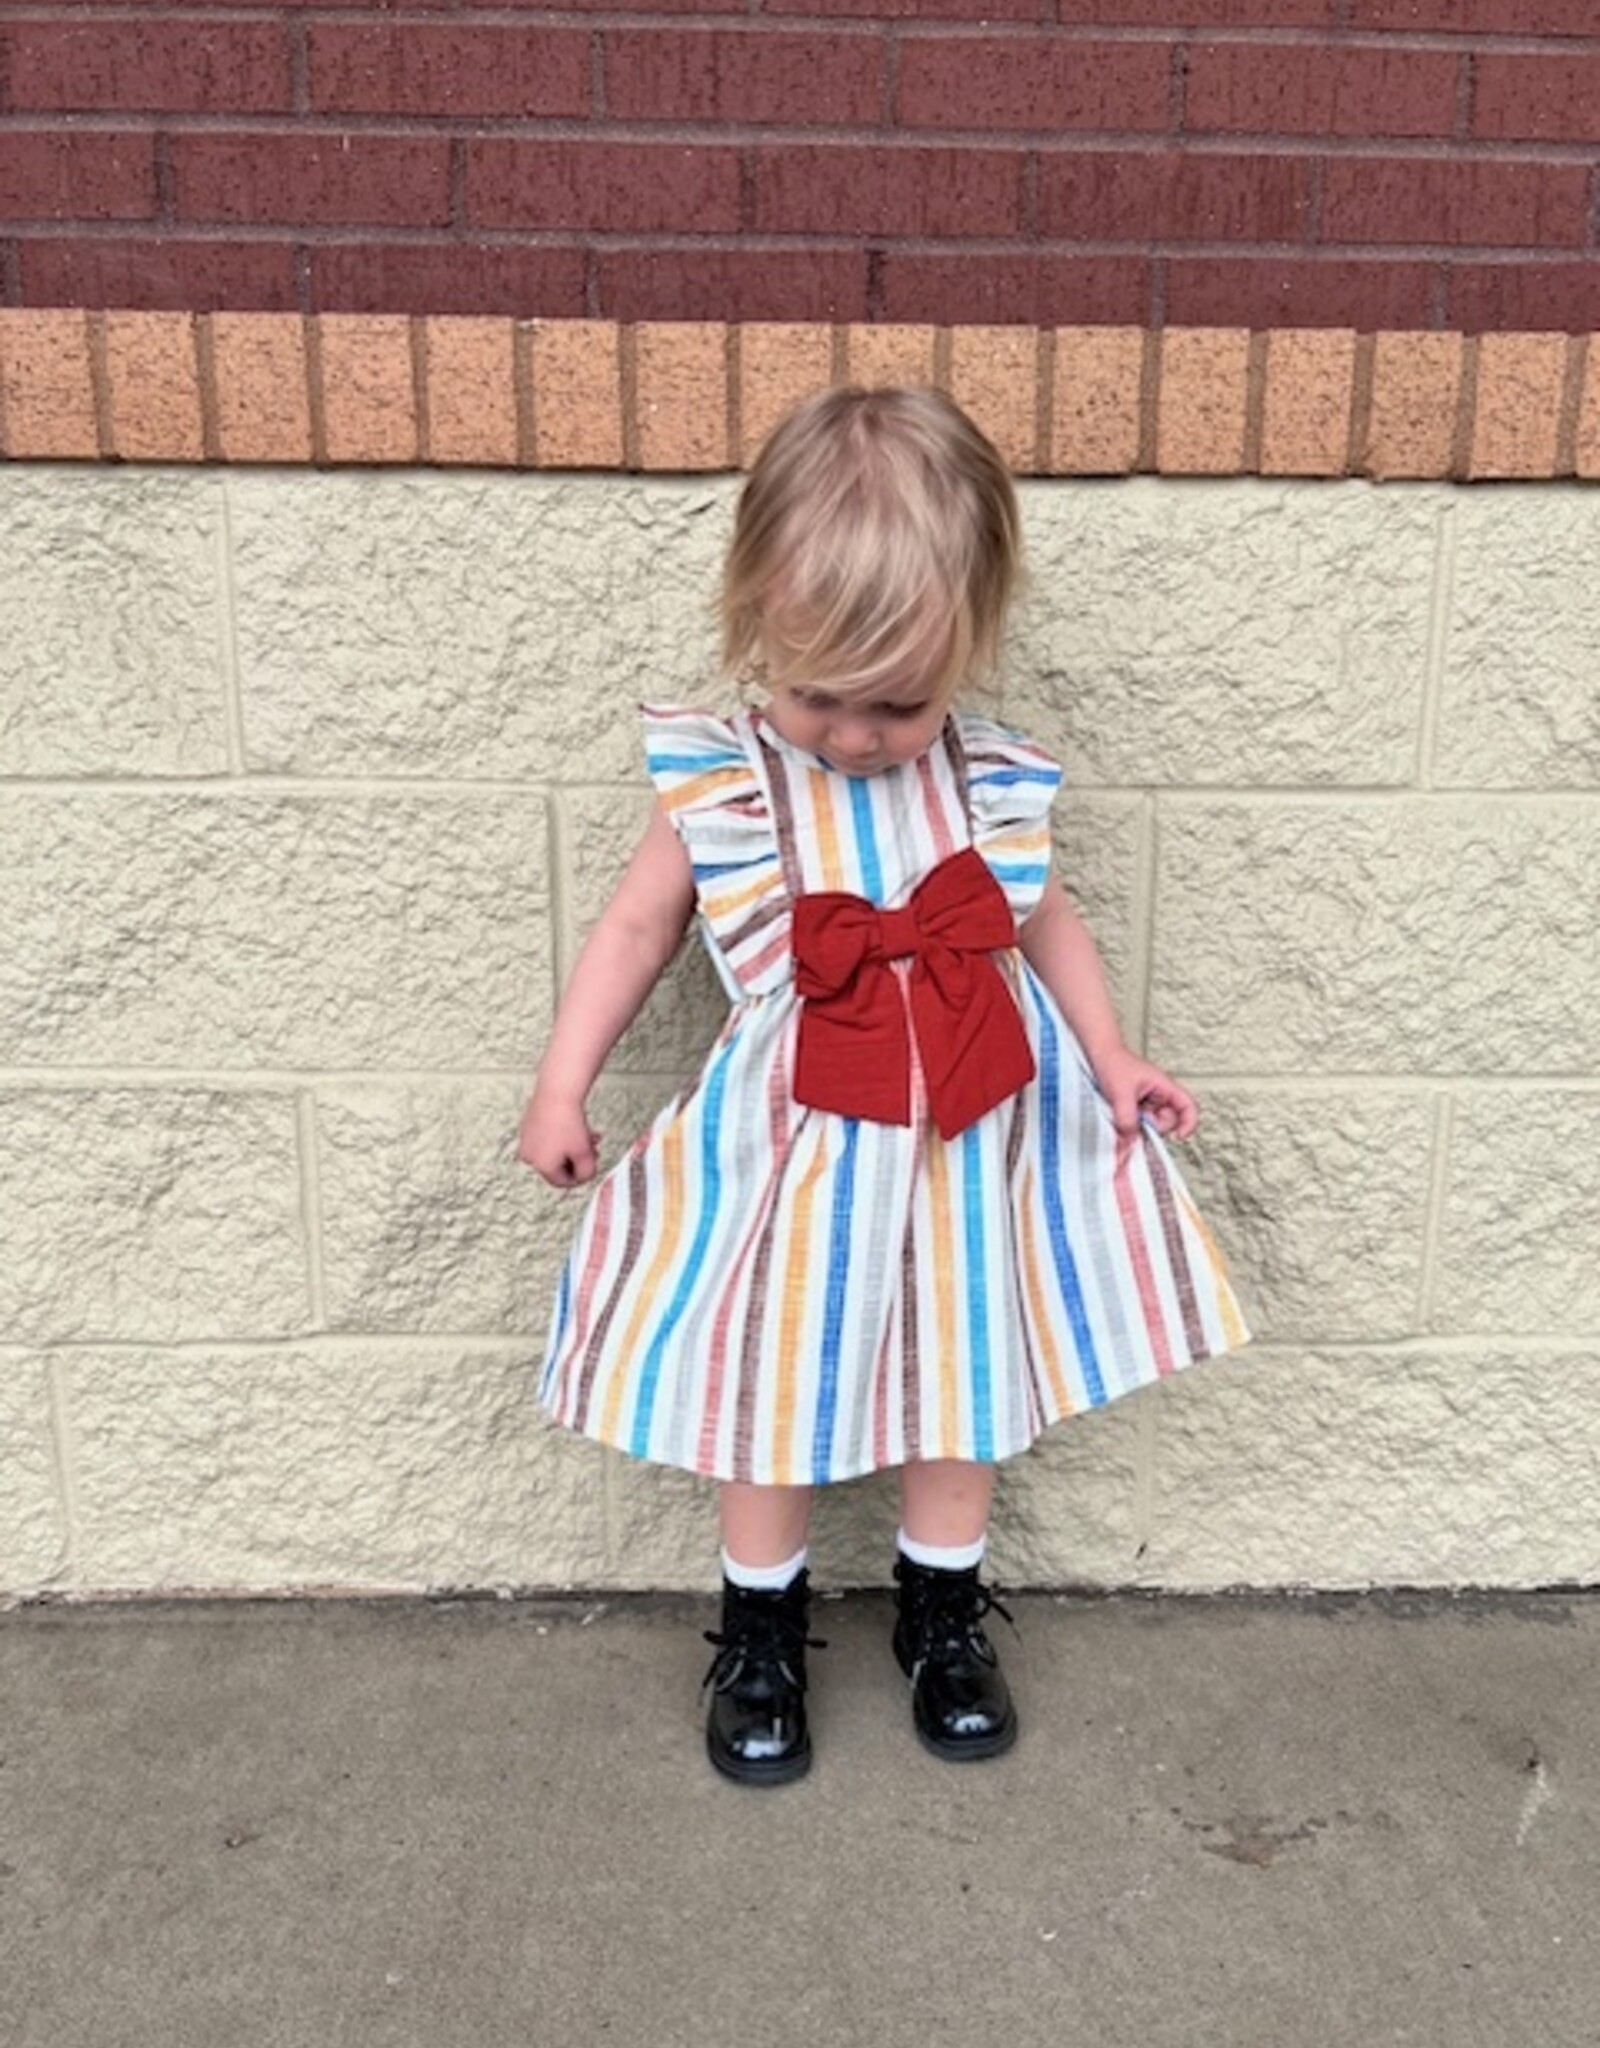 Stripe Bow Dress